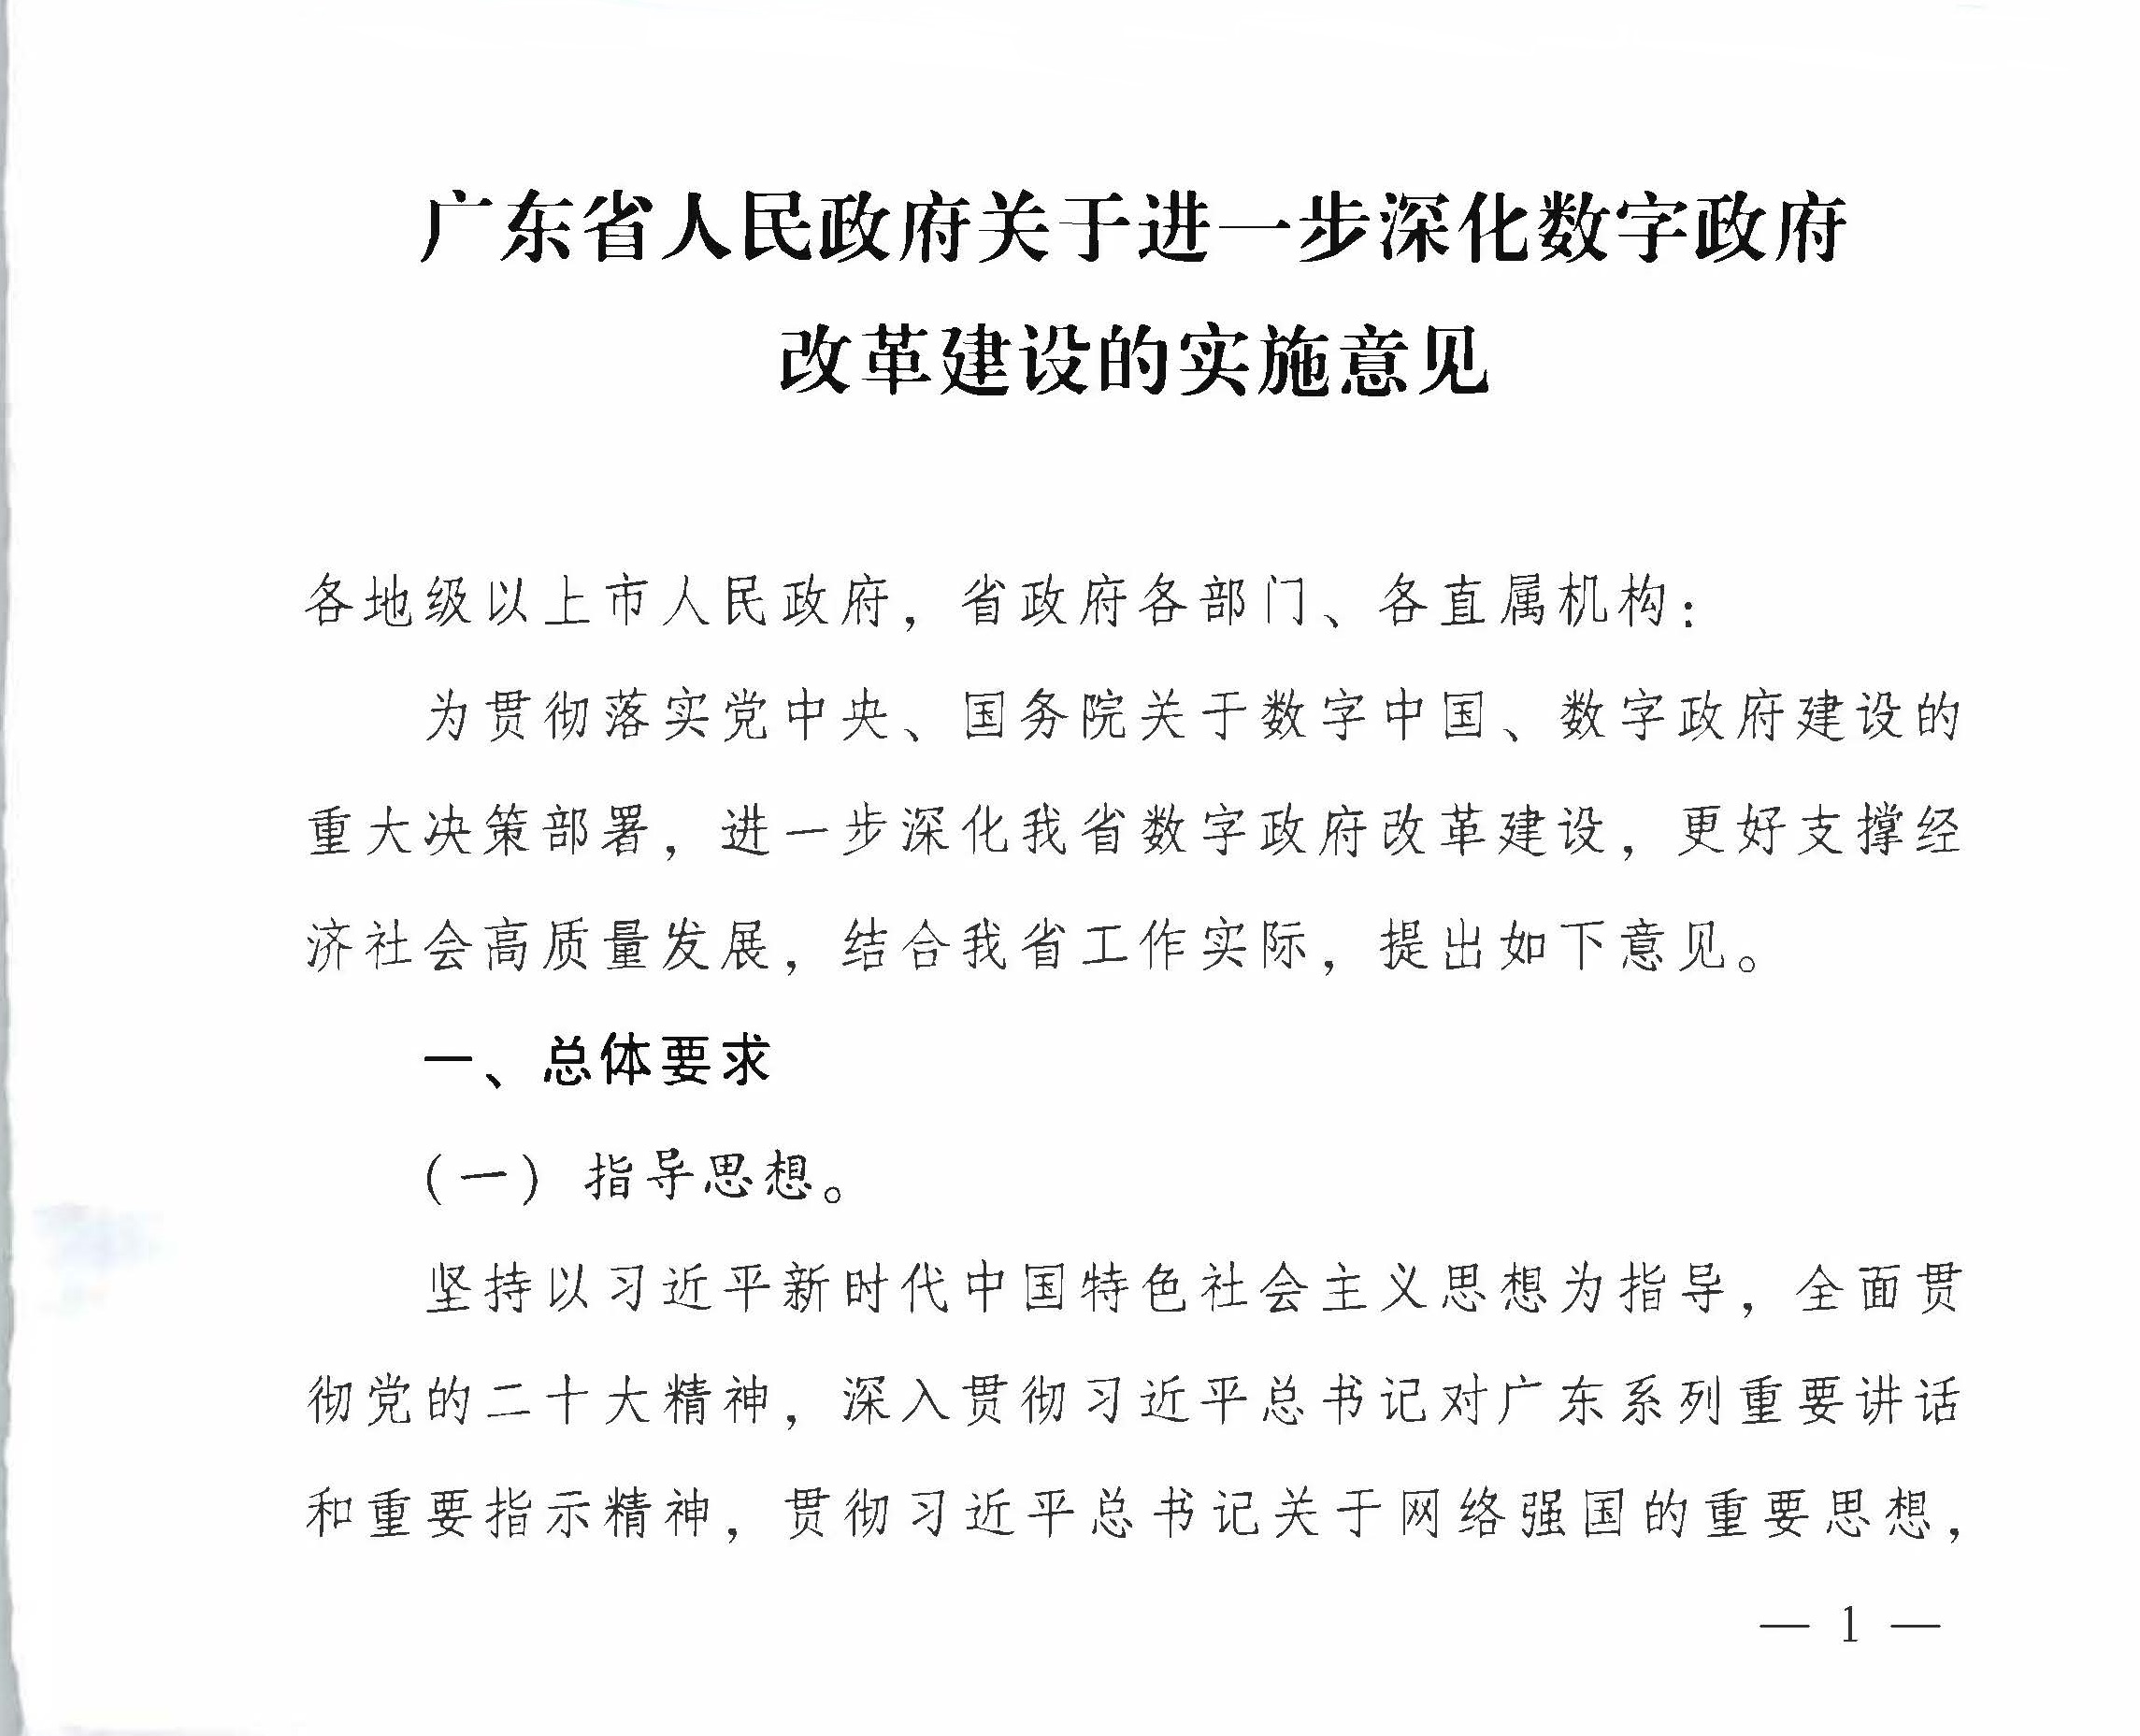 广东省人民政府关于进一步深化数字政府改革建设的实施意见_页面_01.jpg